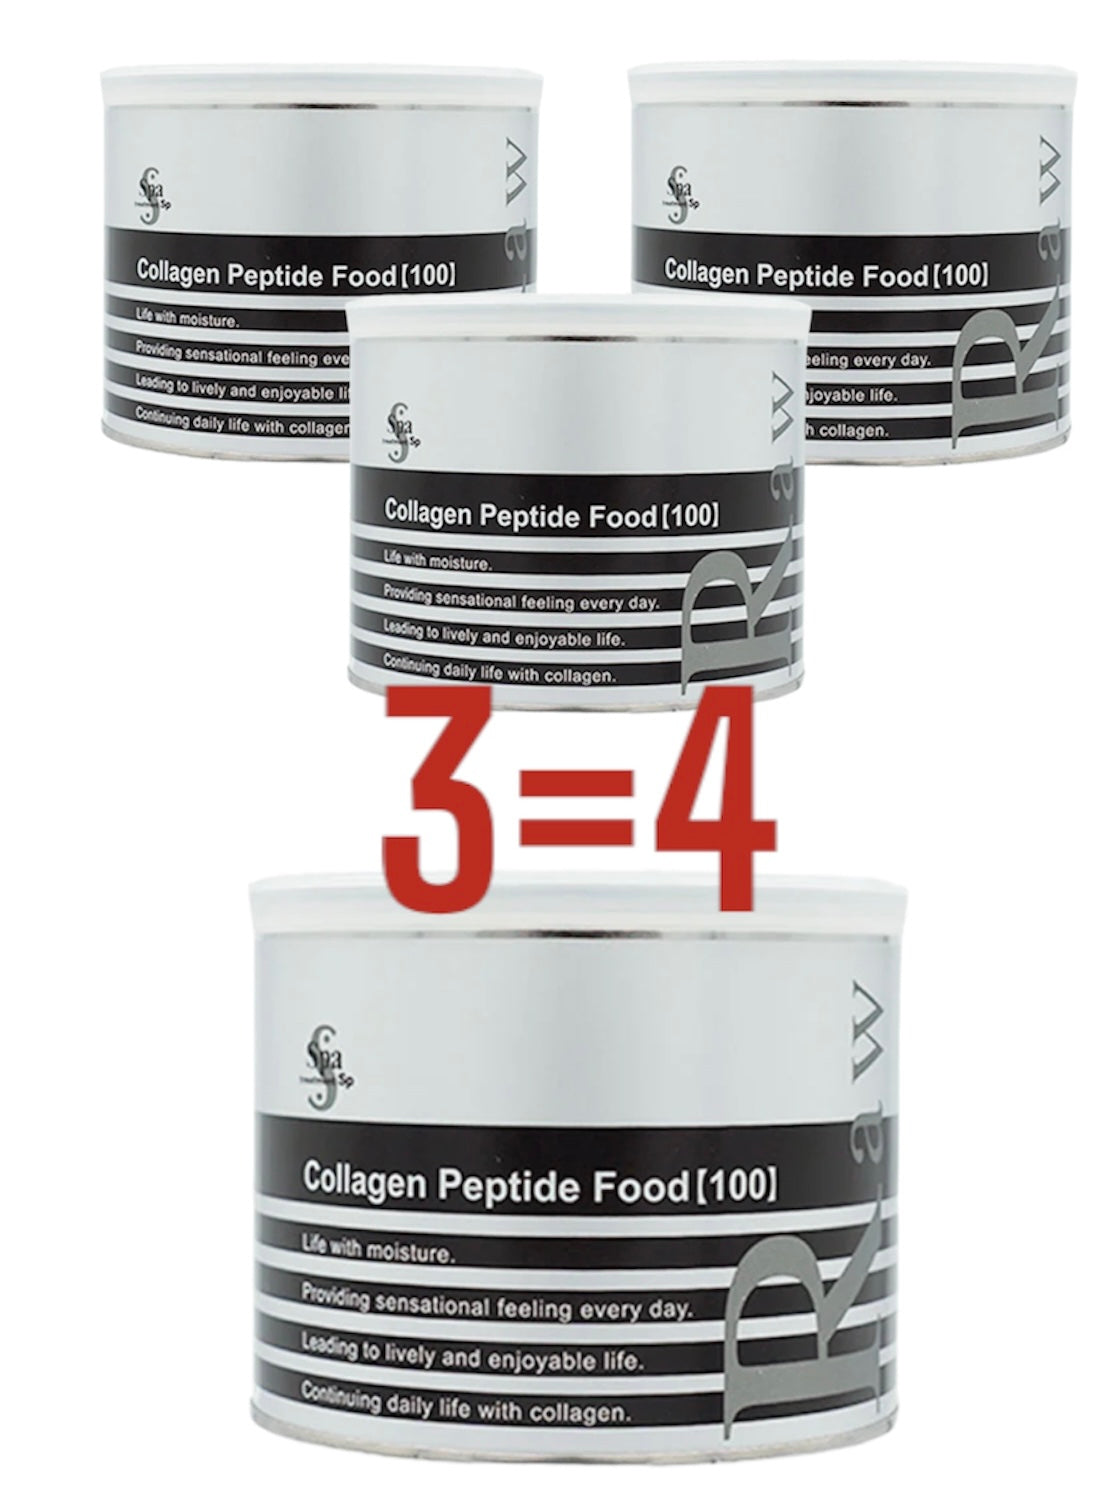 4 Банки коллагена Spa Treatment Collagen Peptide Food 100 по цене 3х